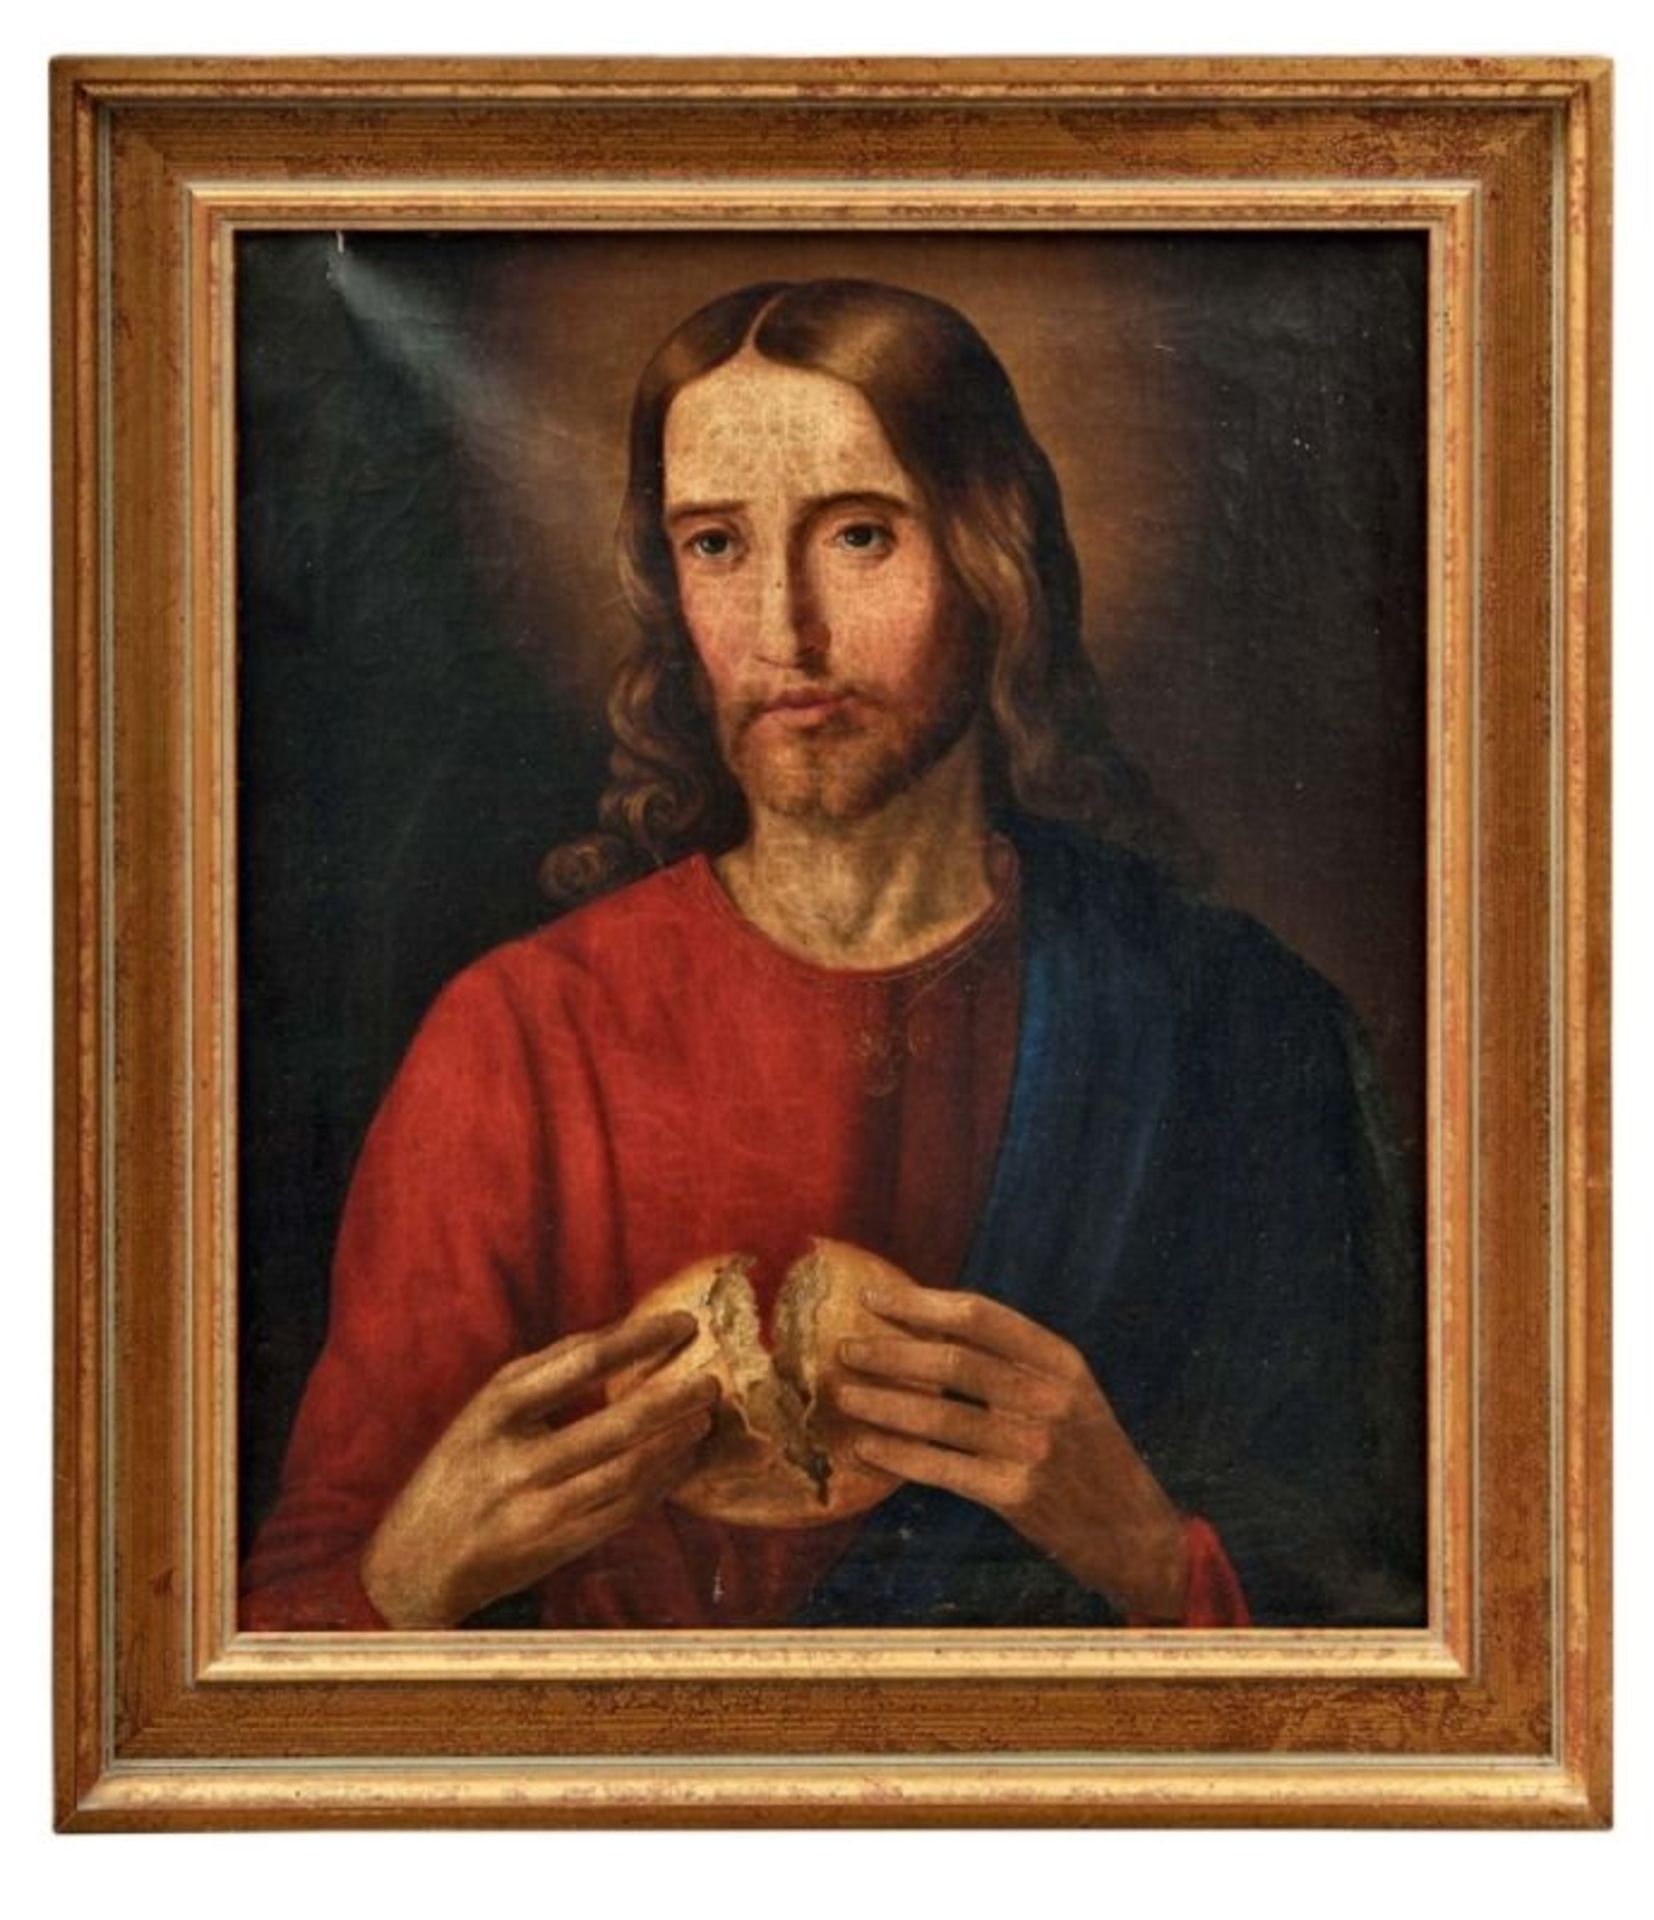 Christus bricht das Brot19. Jh.Öl/Lwd. 54 x 46,5 cm. - Krakeluren, zu reinigen, kleinere